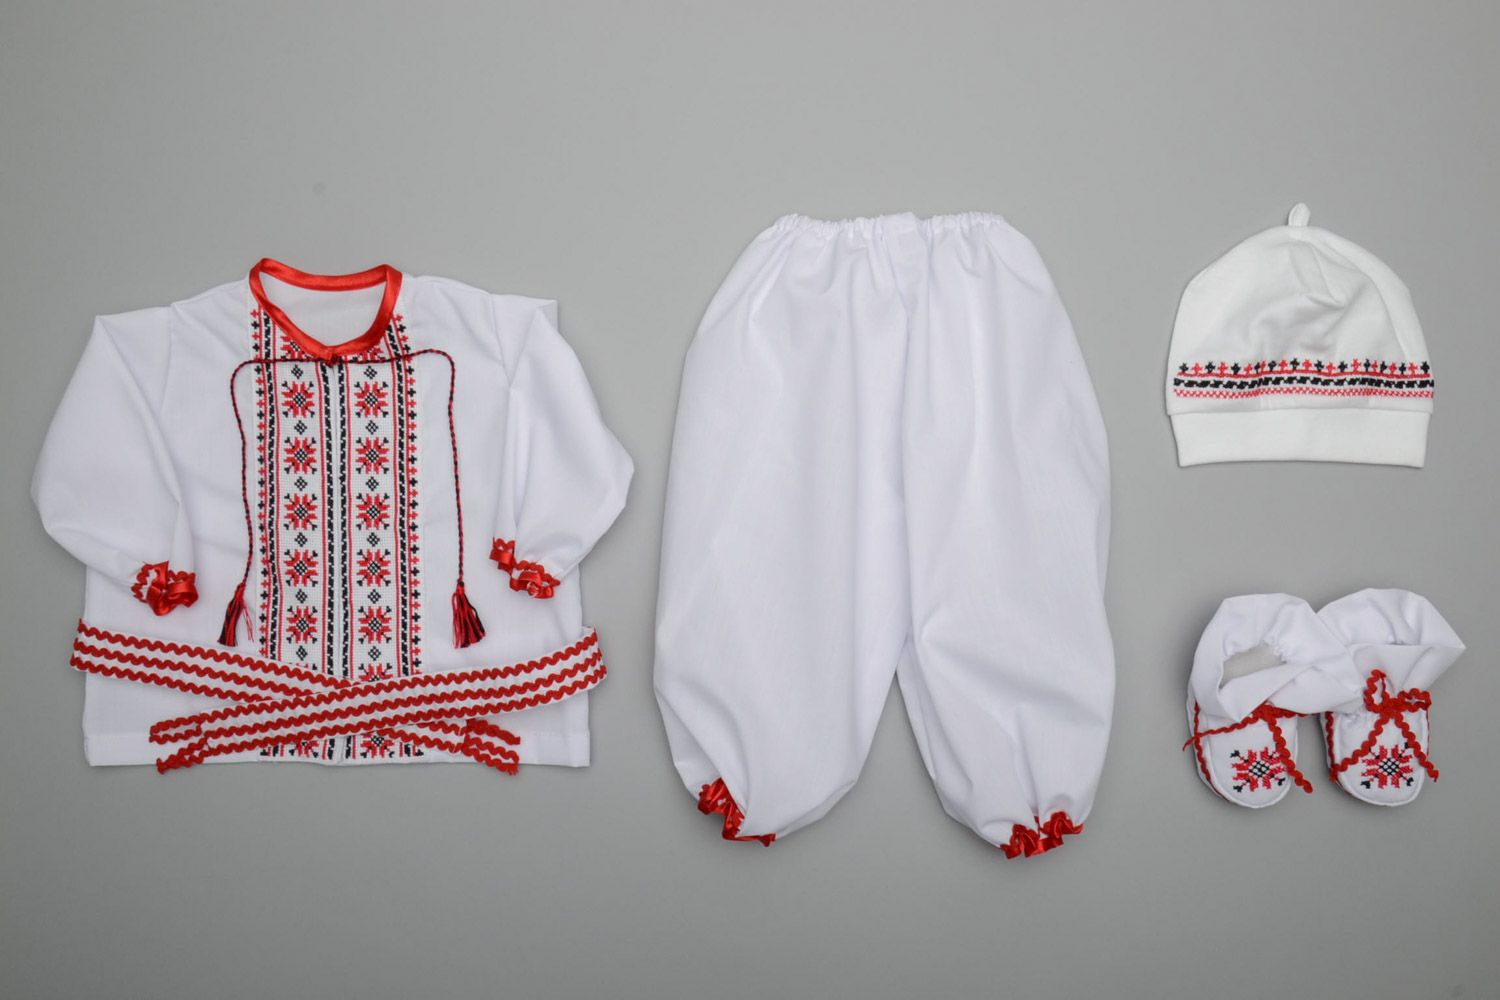 Этнический набор одежды для мальчика вышиванка штаны пояс шапочка пинетки и пояс фото 4